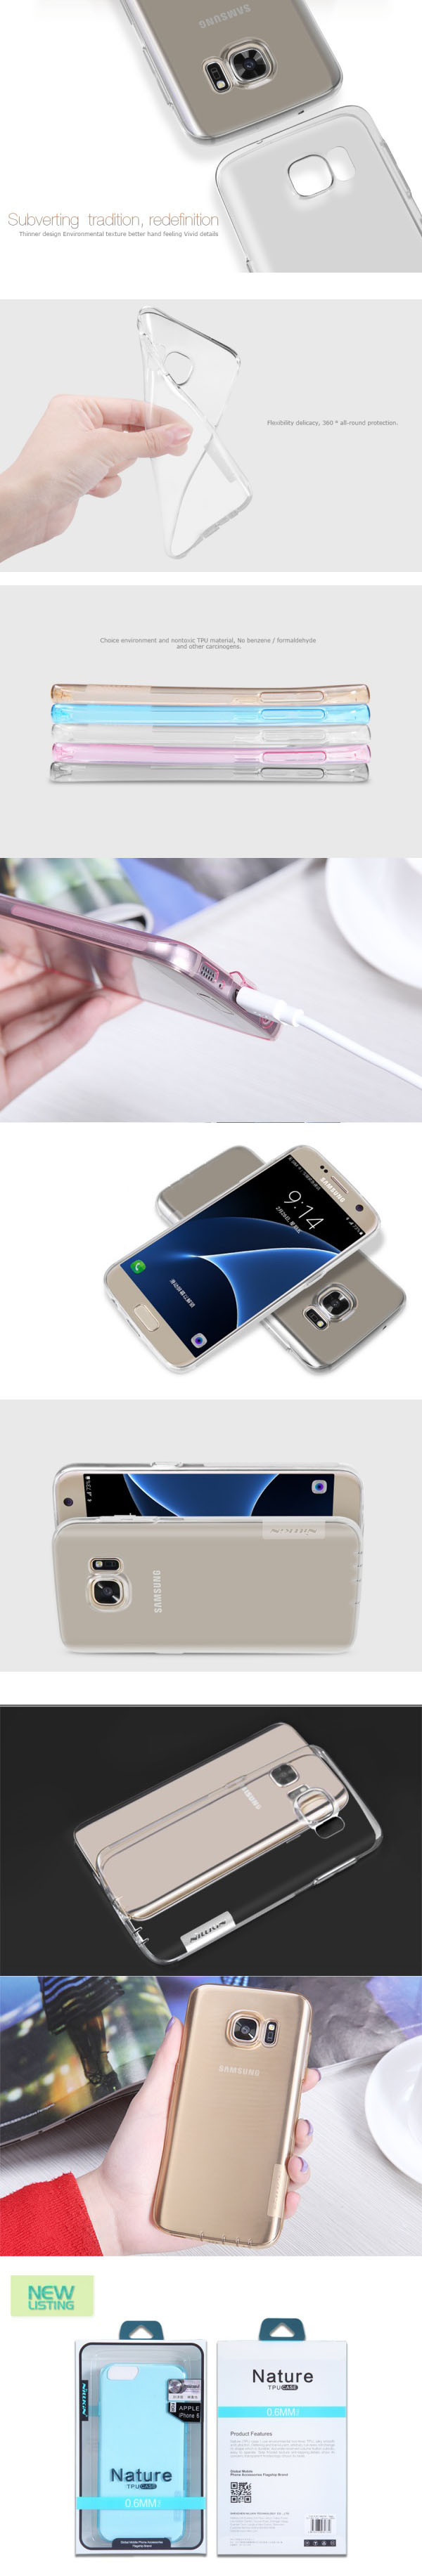 Ốp lưng Galaxy S7 TPU Nillkin nhựa dẻo trong suốt 33